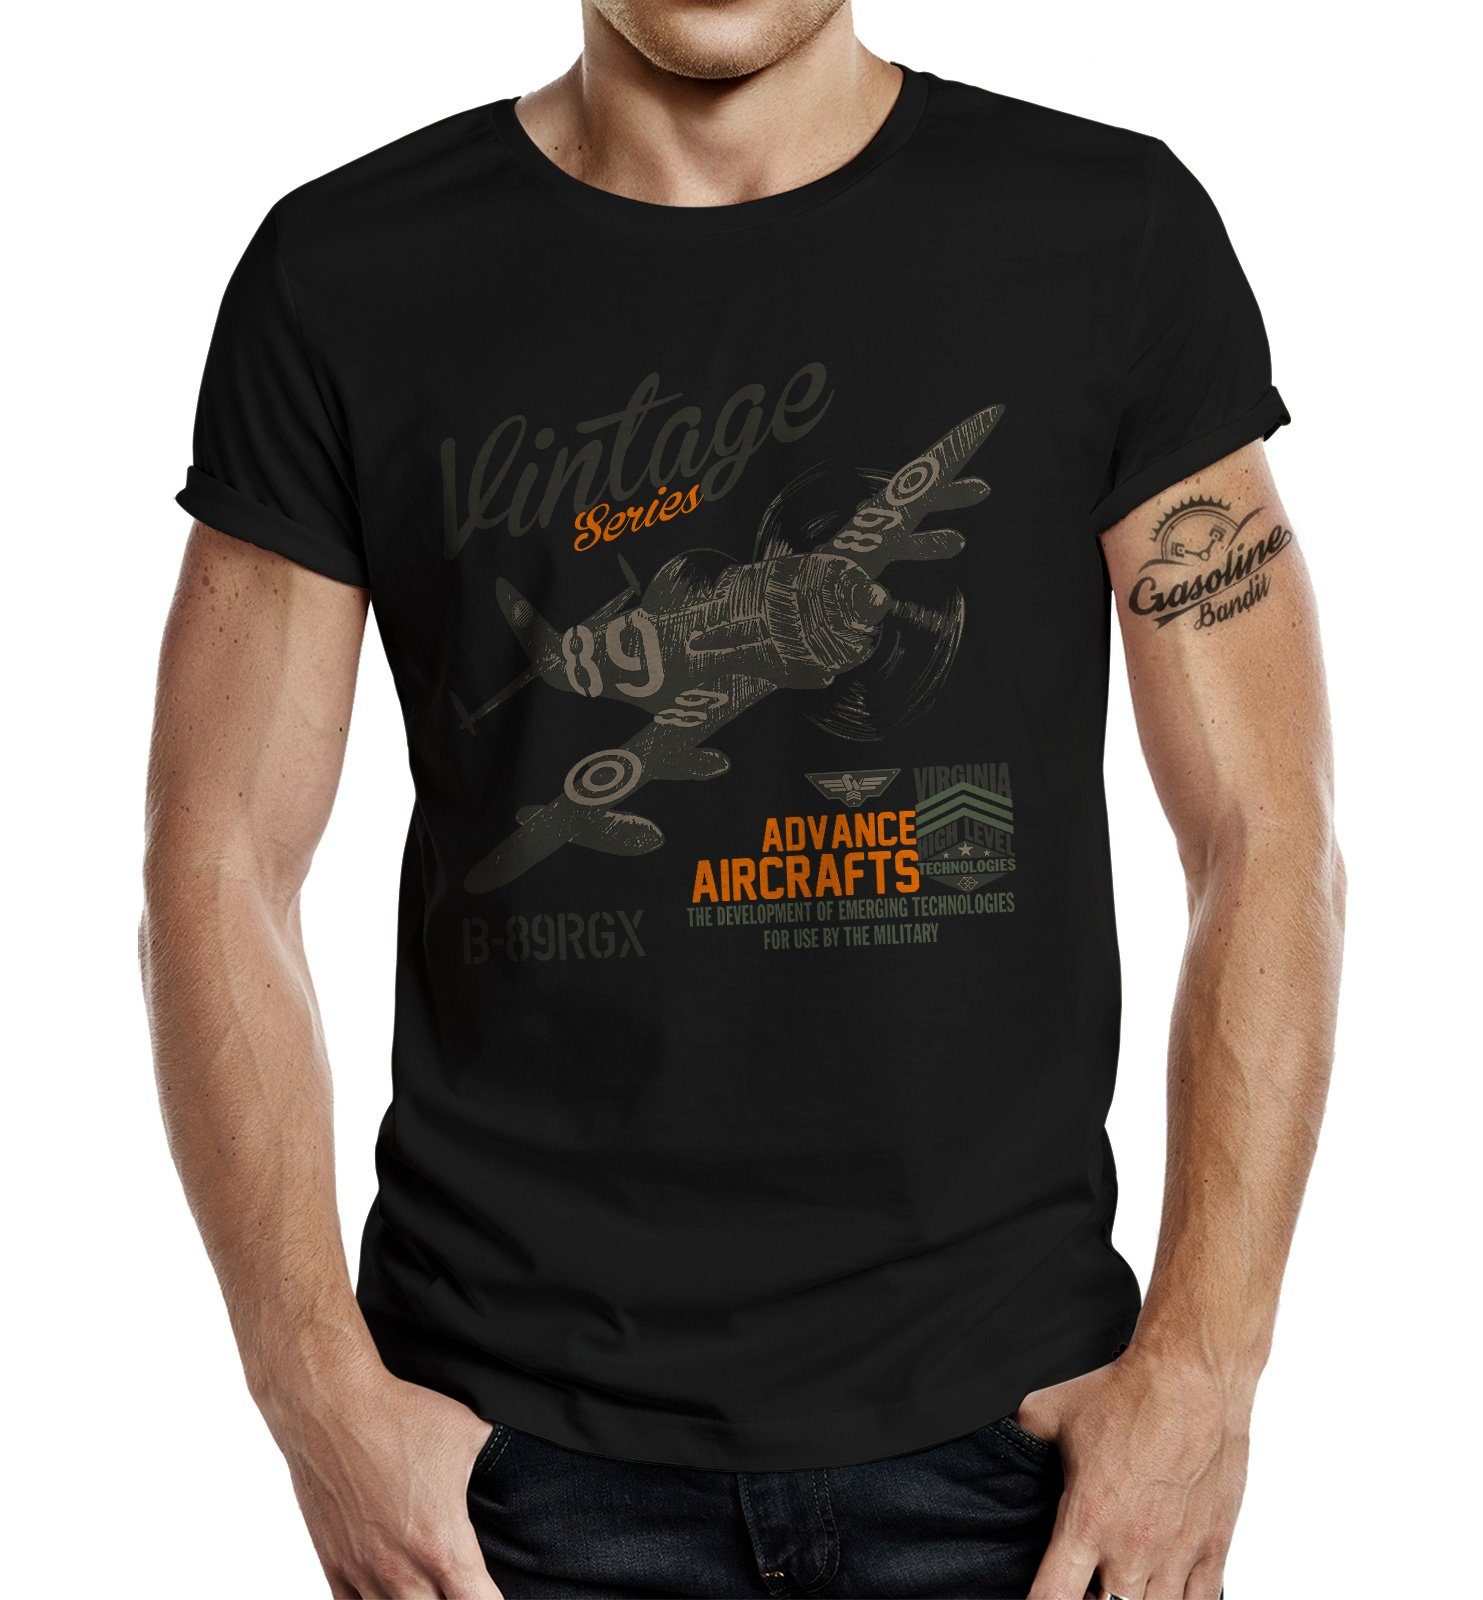 GASOLINE BANDIT® T-Shirt in schwarz für Airborne Racing US-Airforce Fans: Vintage Air